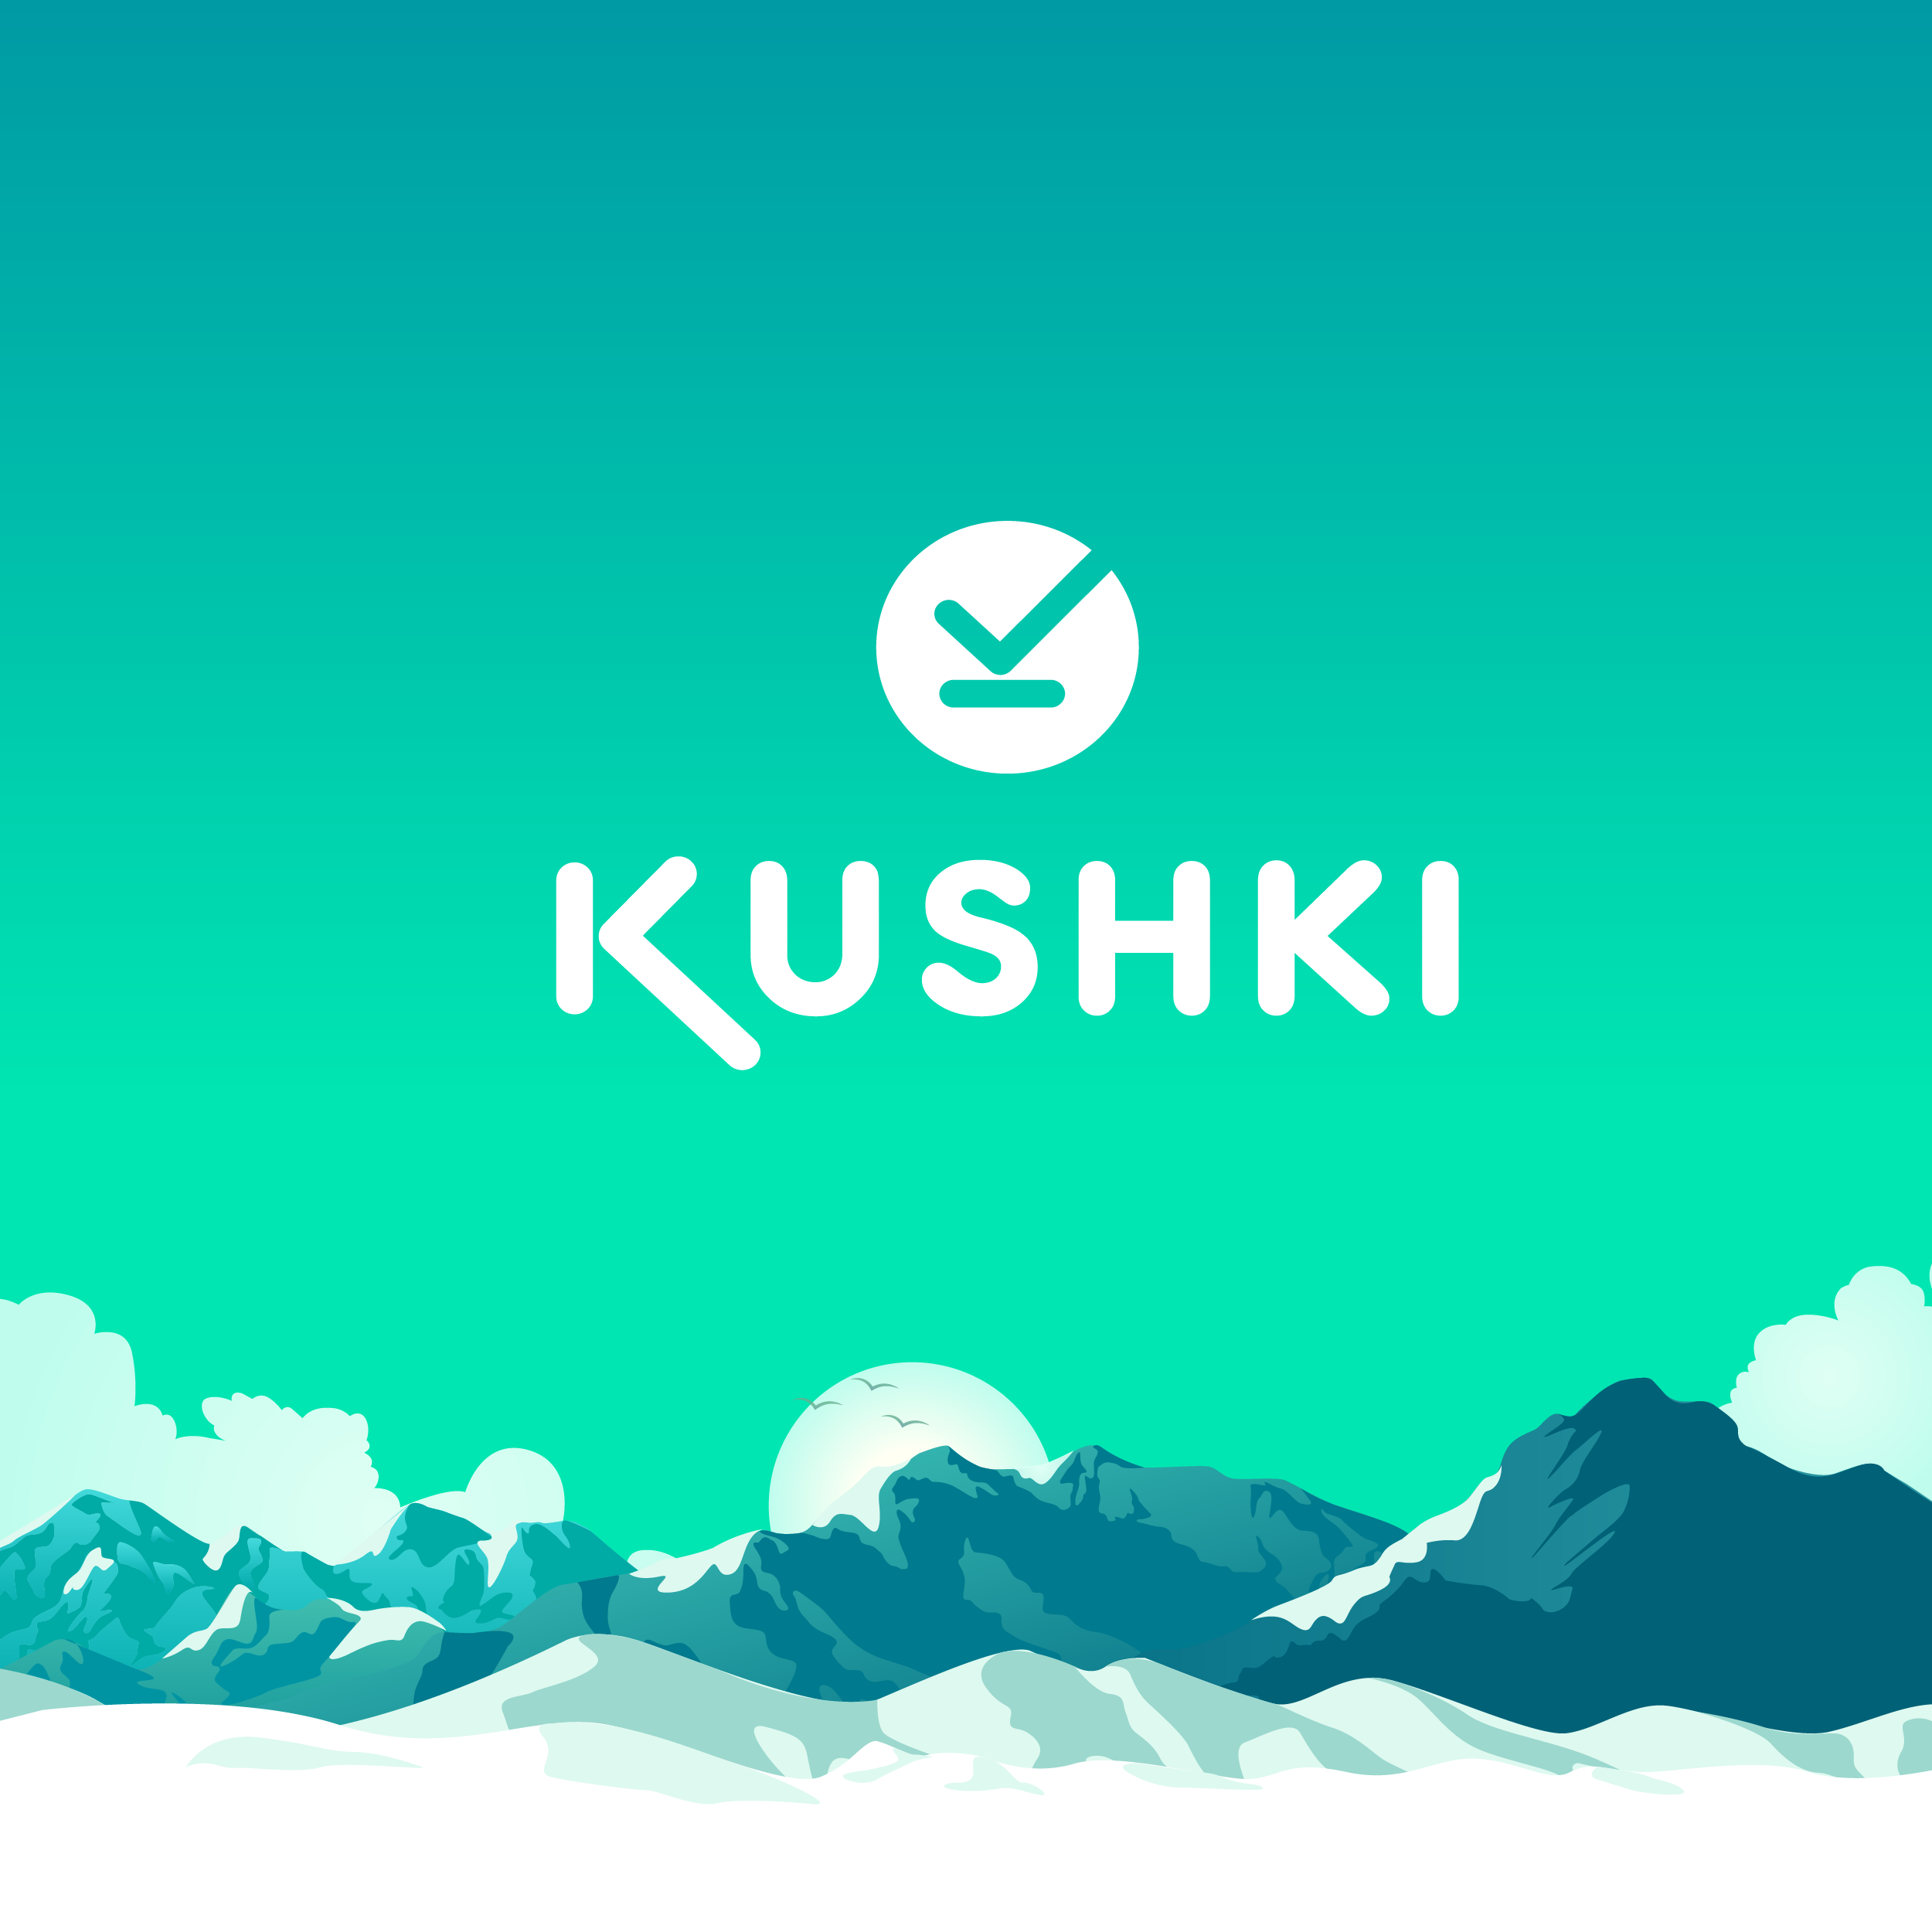 (c) Kushki.com